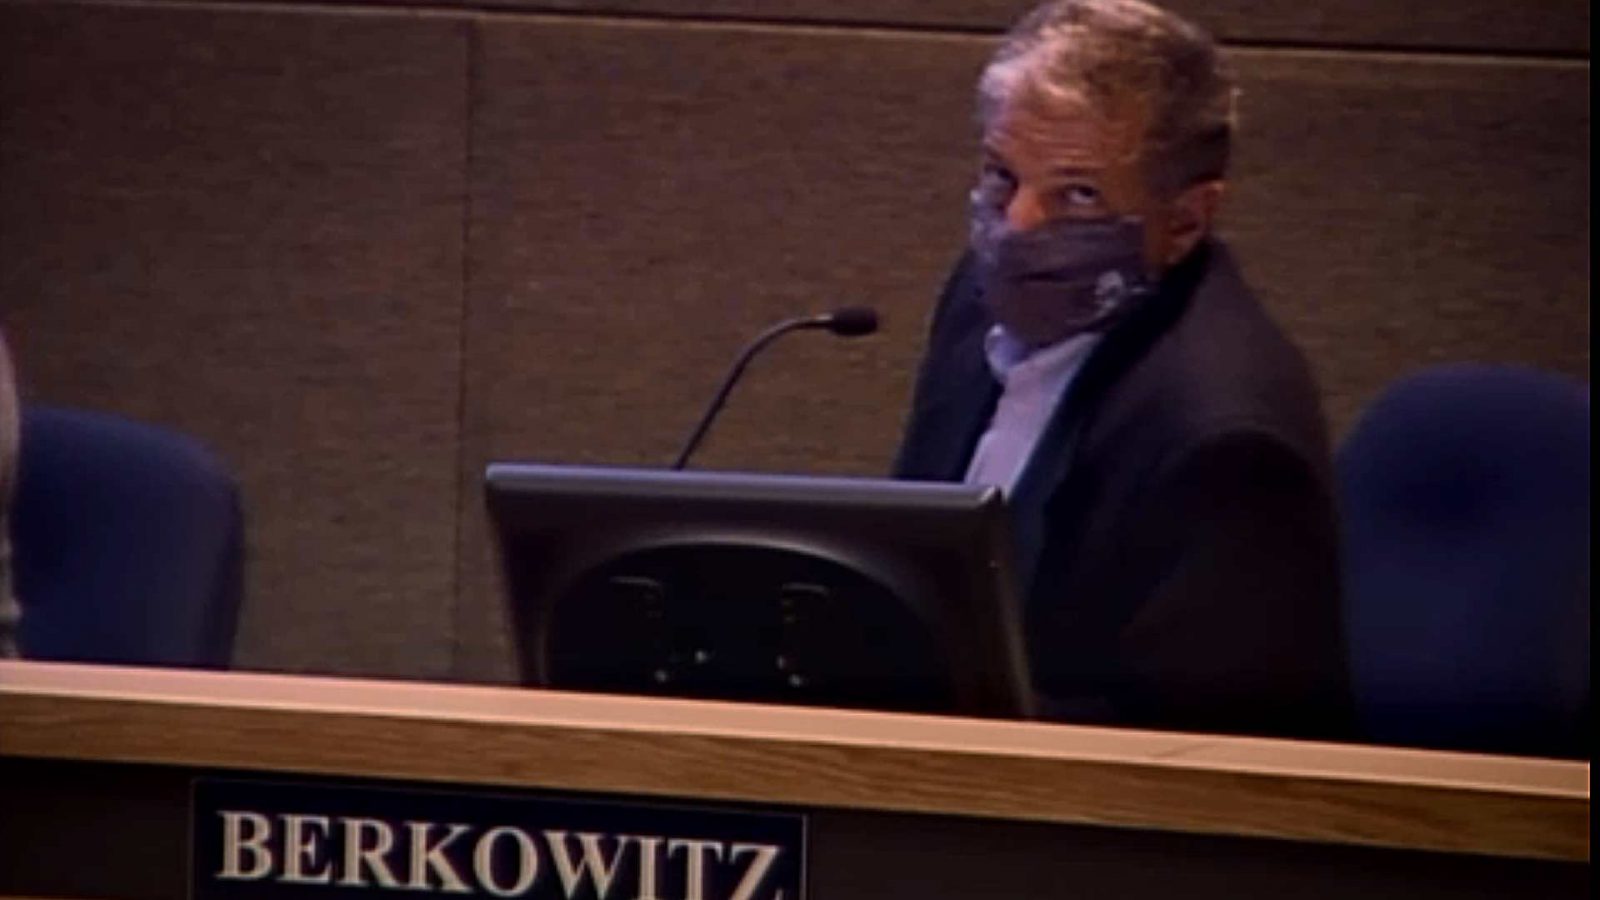 Berkowitz in mask2